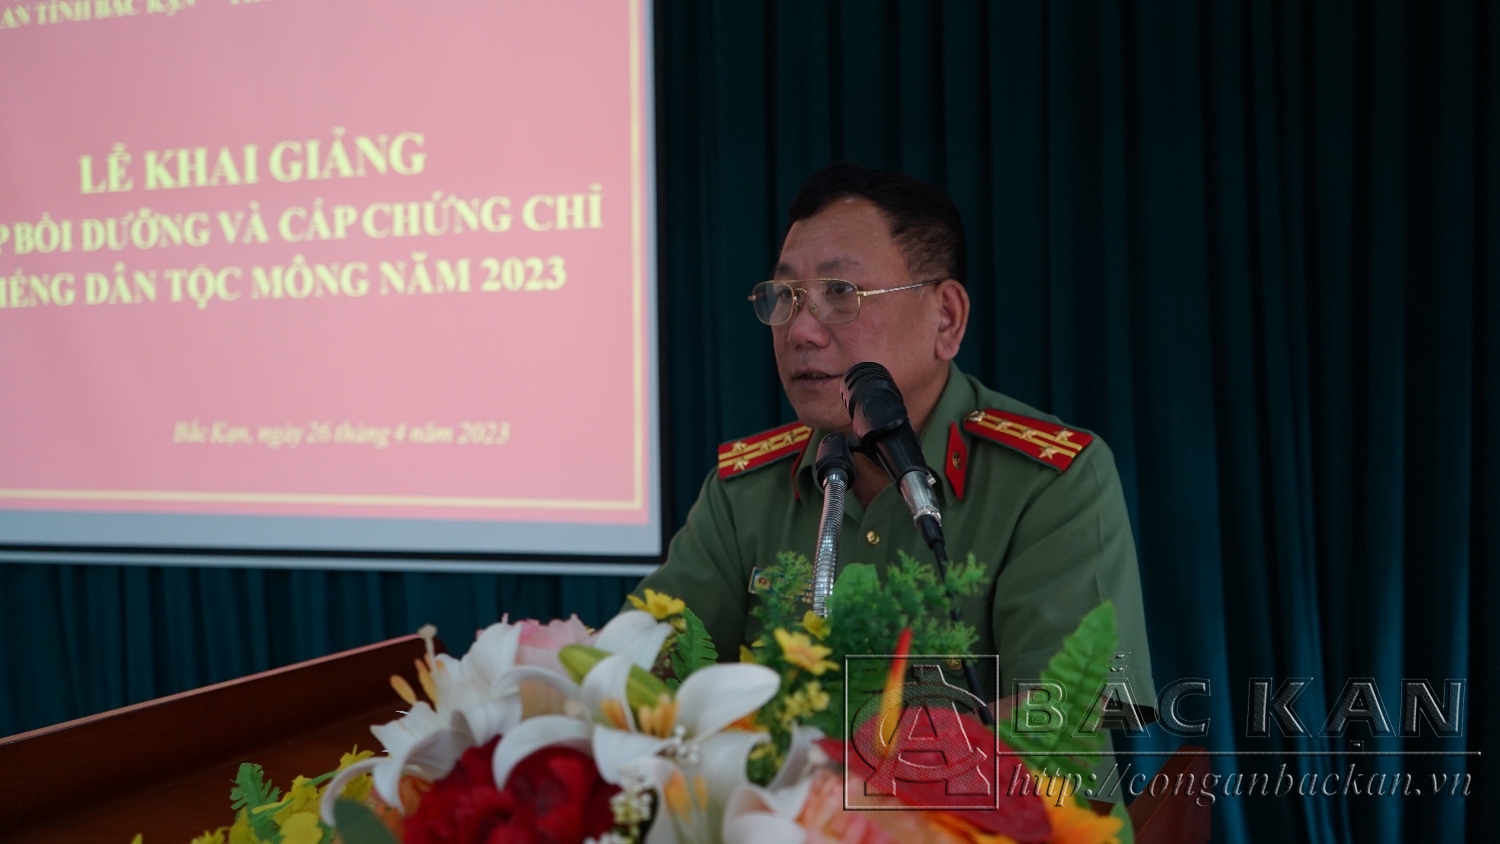 Đại tá Đinh Quang Huy- Phó giám đốc Côna an tỉnh phát biểu tại Lễ khai giảng